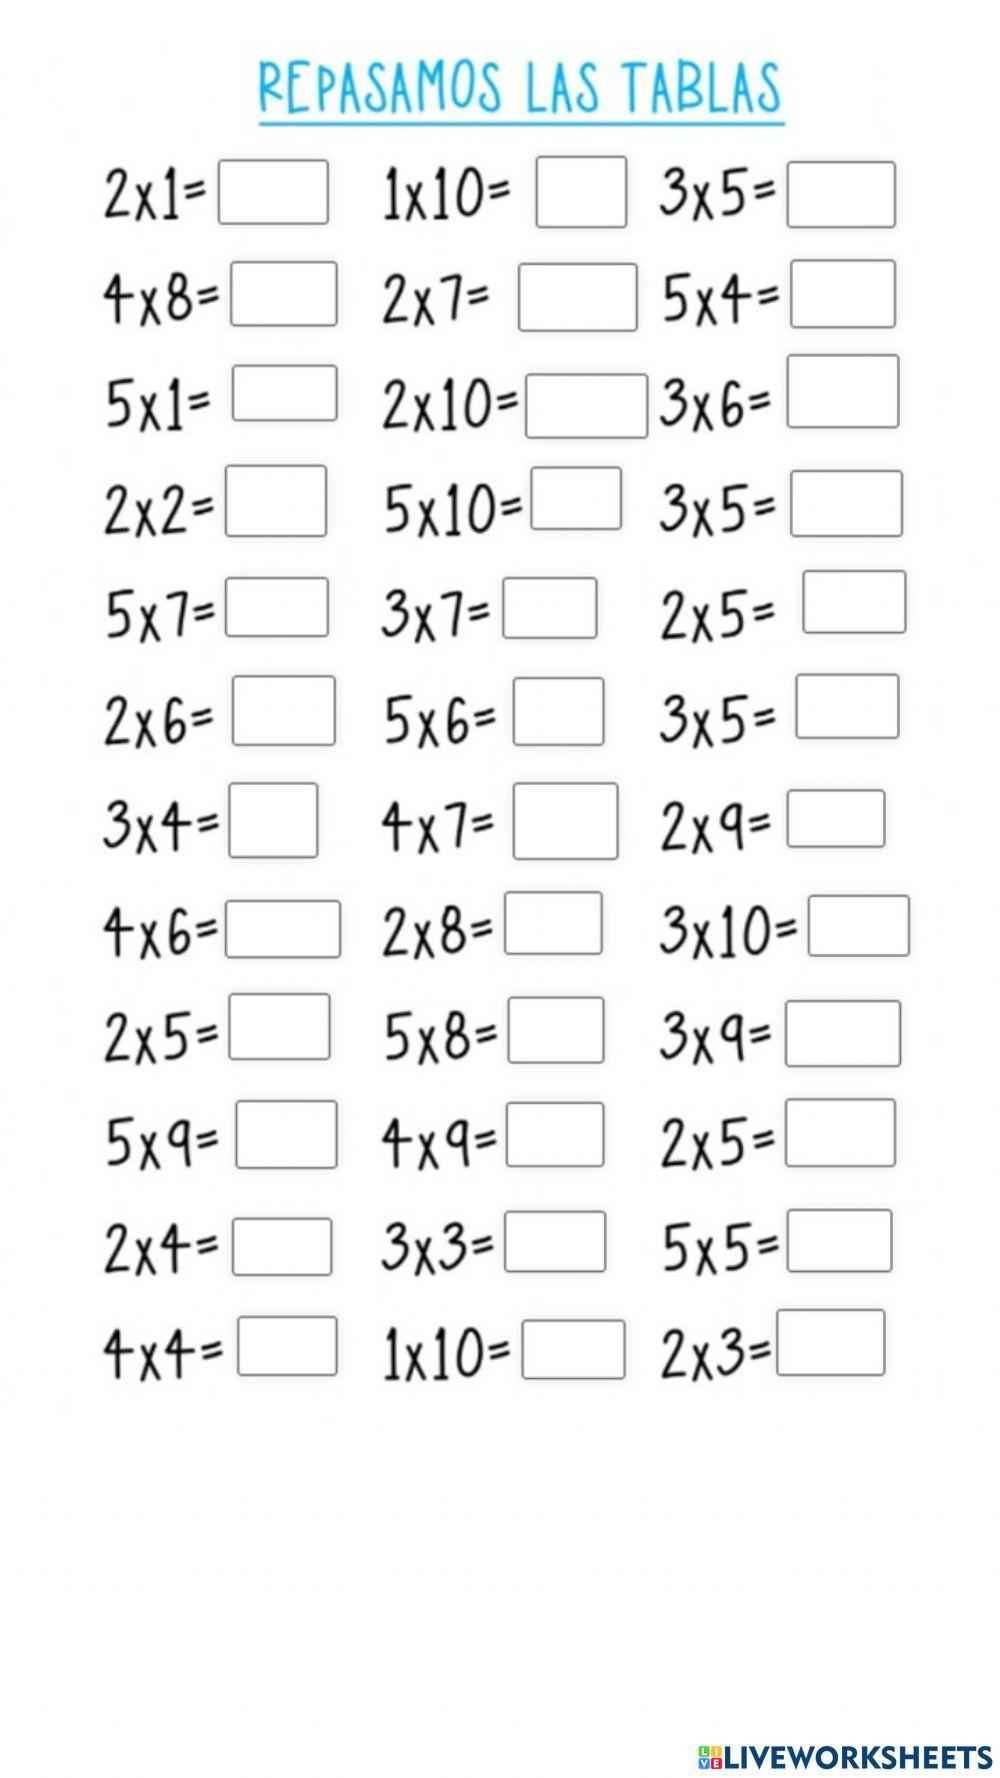 Tablas de multiplicar 1,2,3,4,5